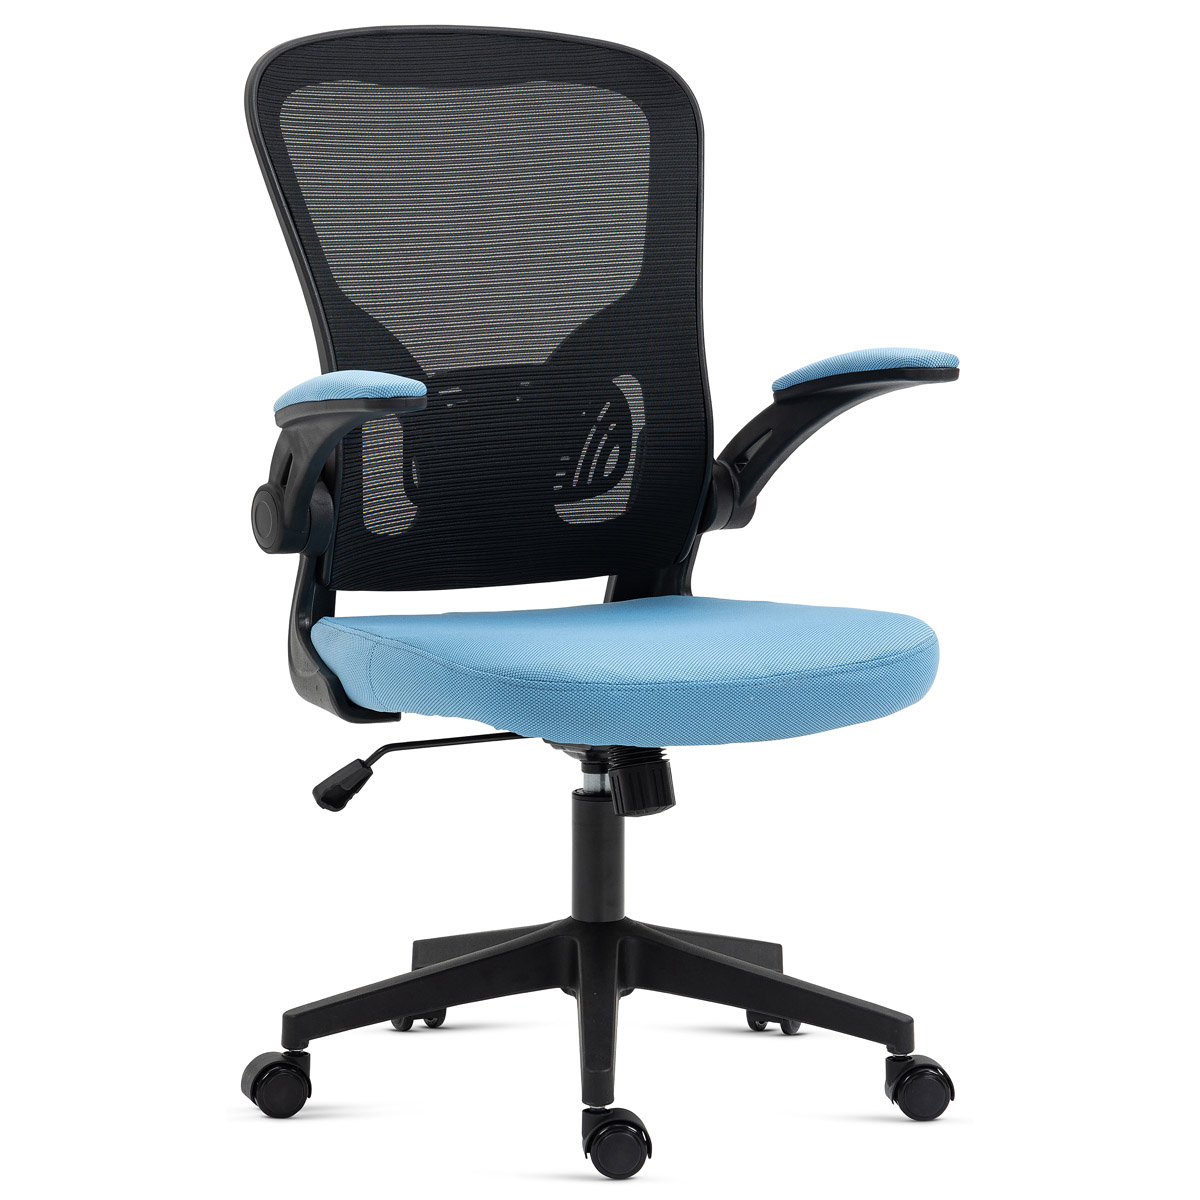 Kancelářská židle, černý plast, modrá látka, sklápěcí područky, kolečka pro tvrd